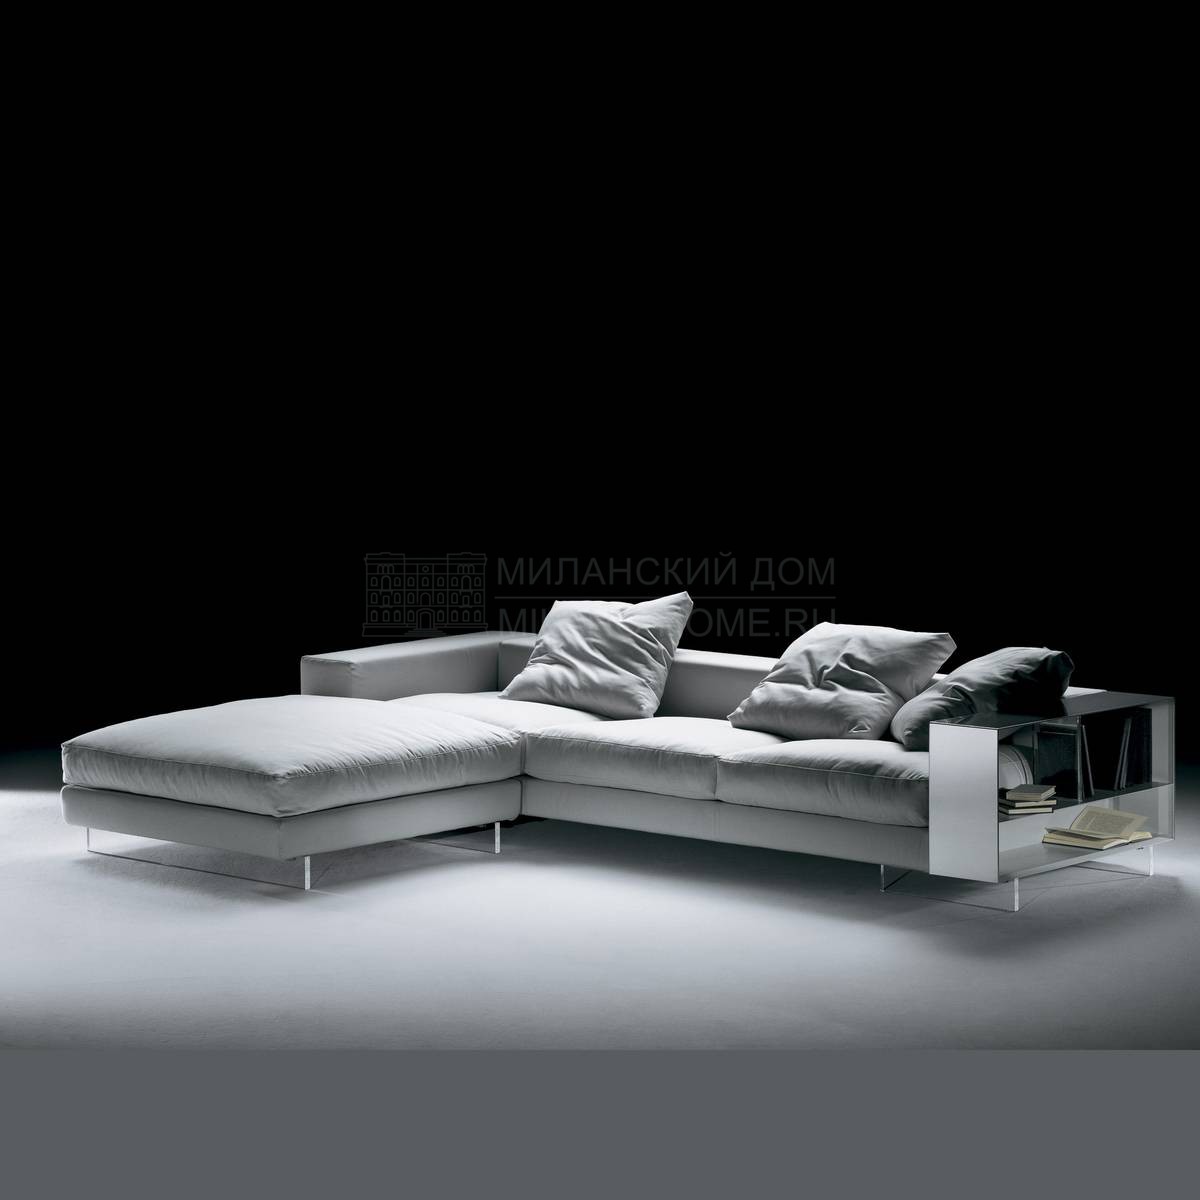 Модульный диван Lightpiece  /sofa из Италии фабрики FLEXFORM